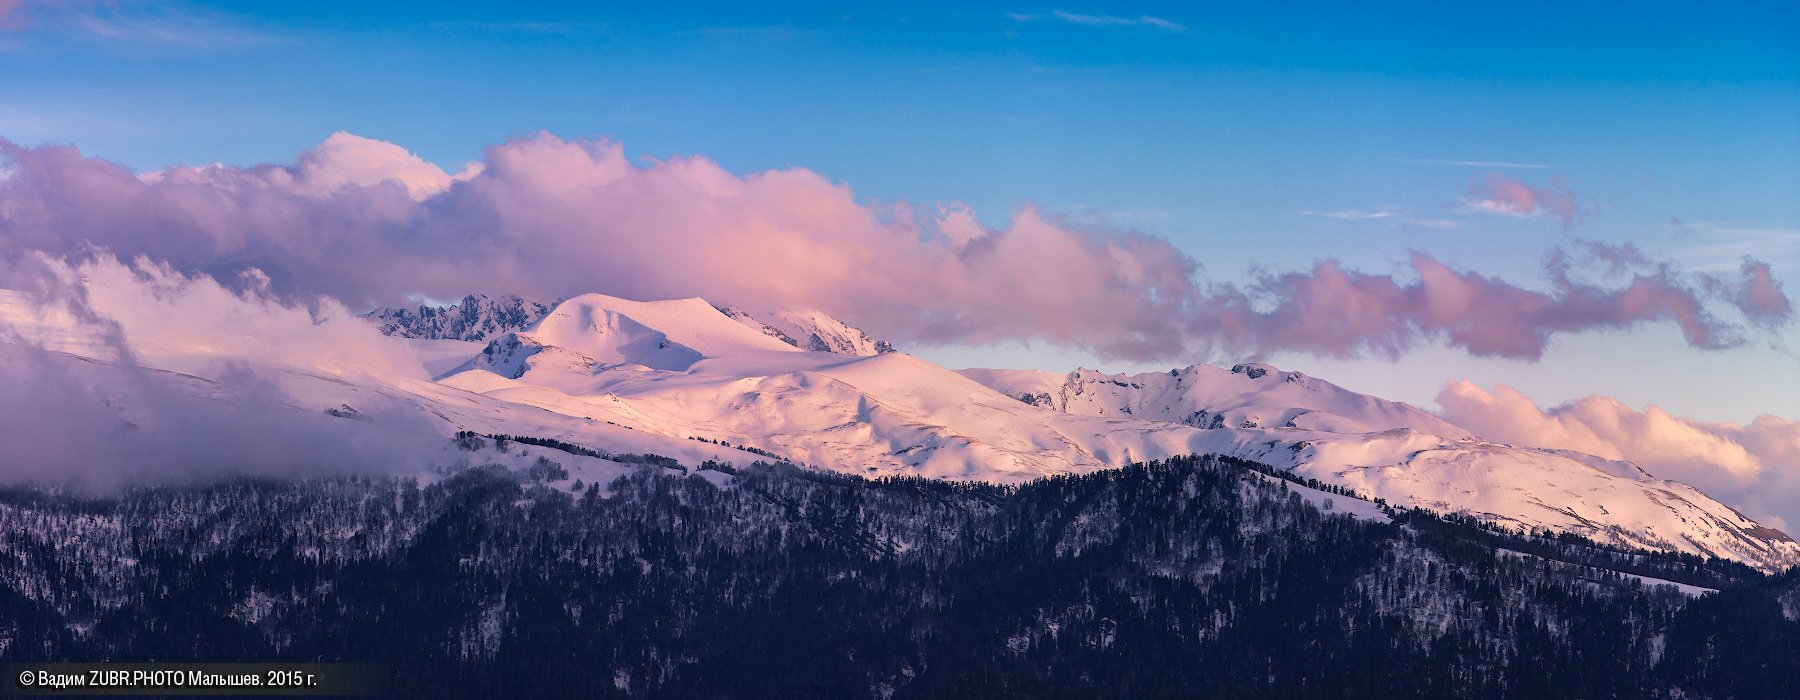 Панорама, вечер, горы, снег, кавказ, zubrphoto, Вадим ZUBR Малышев